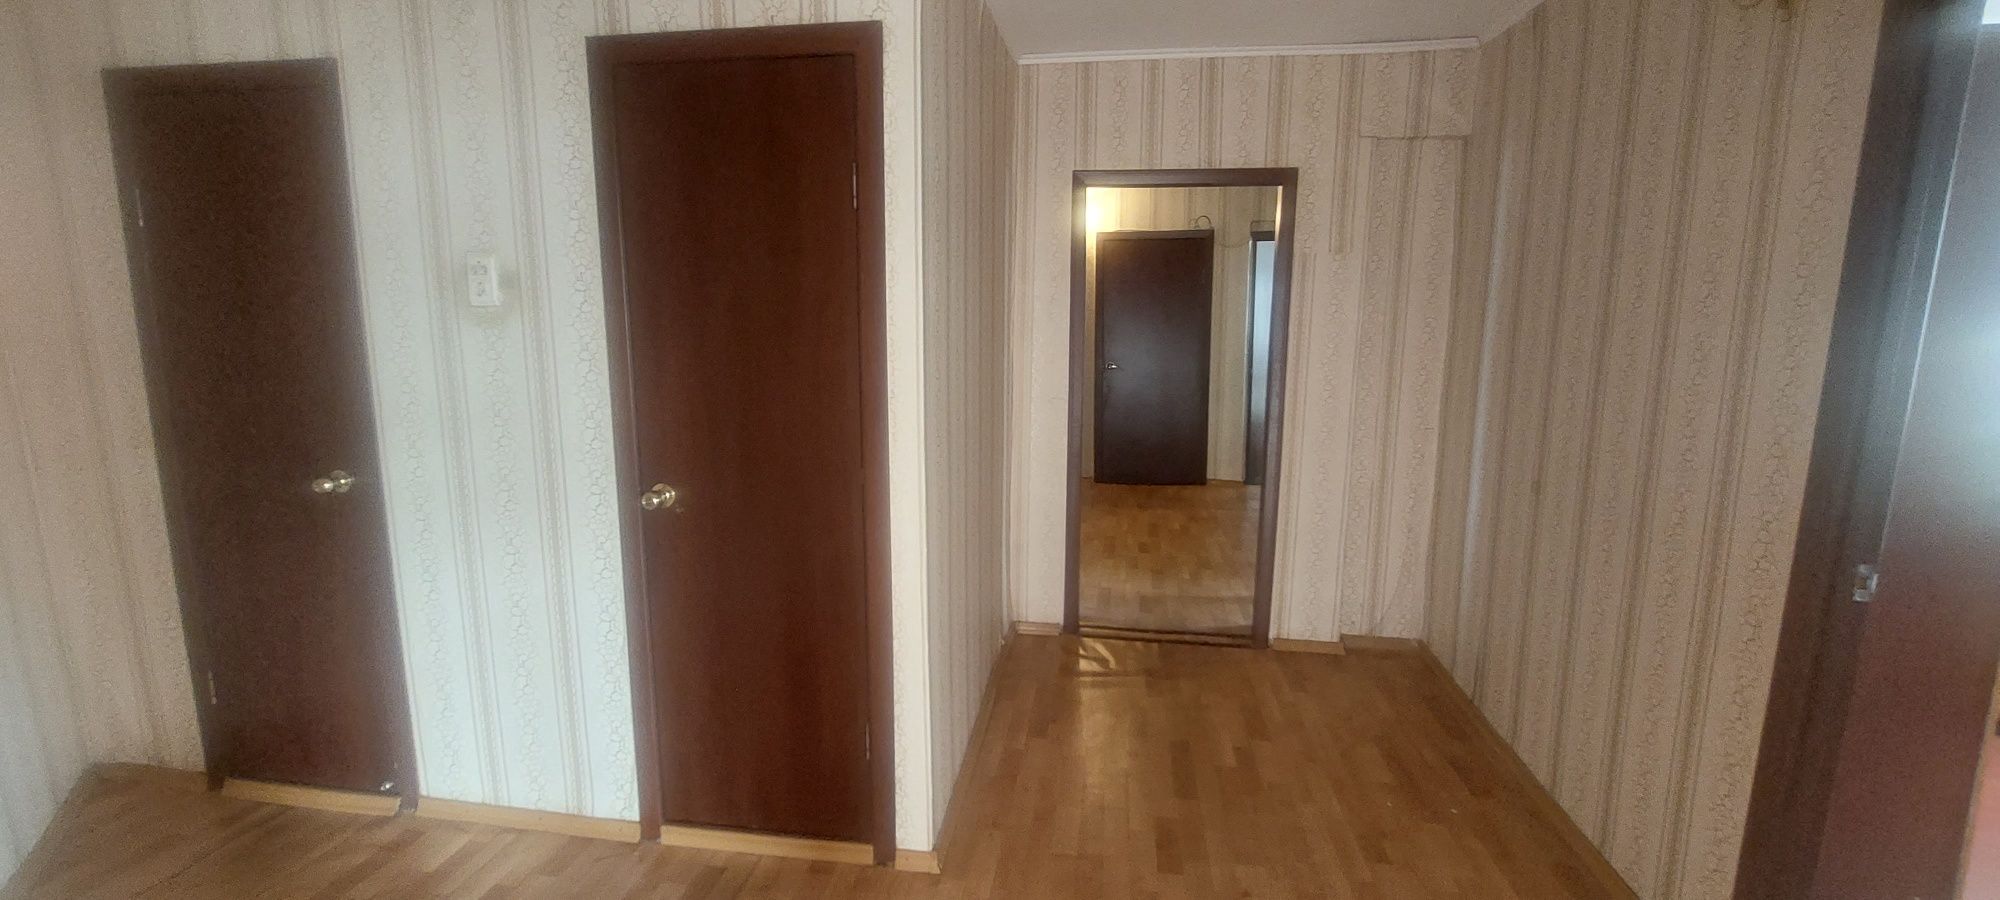 Продаётся 4-х комнатная квартира в р-не Новая Согра